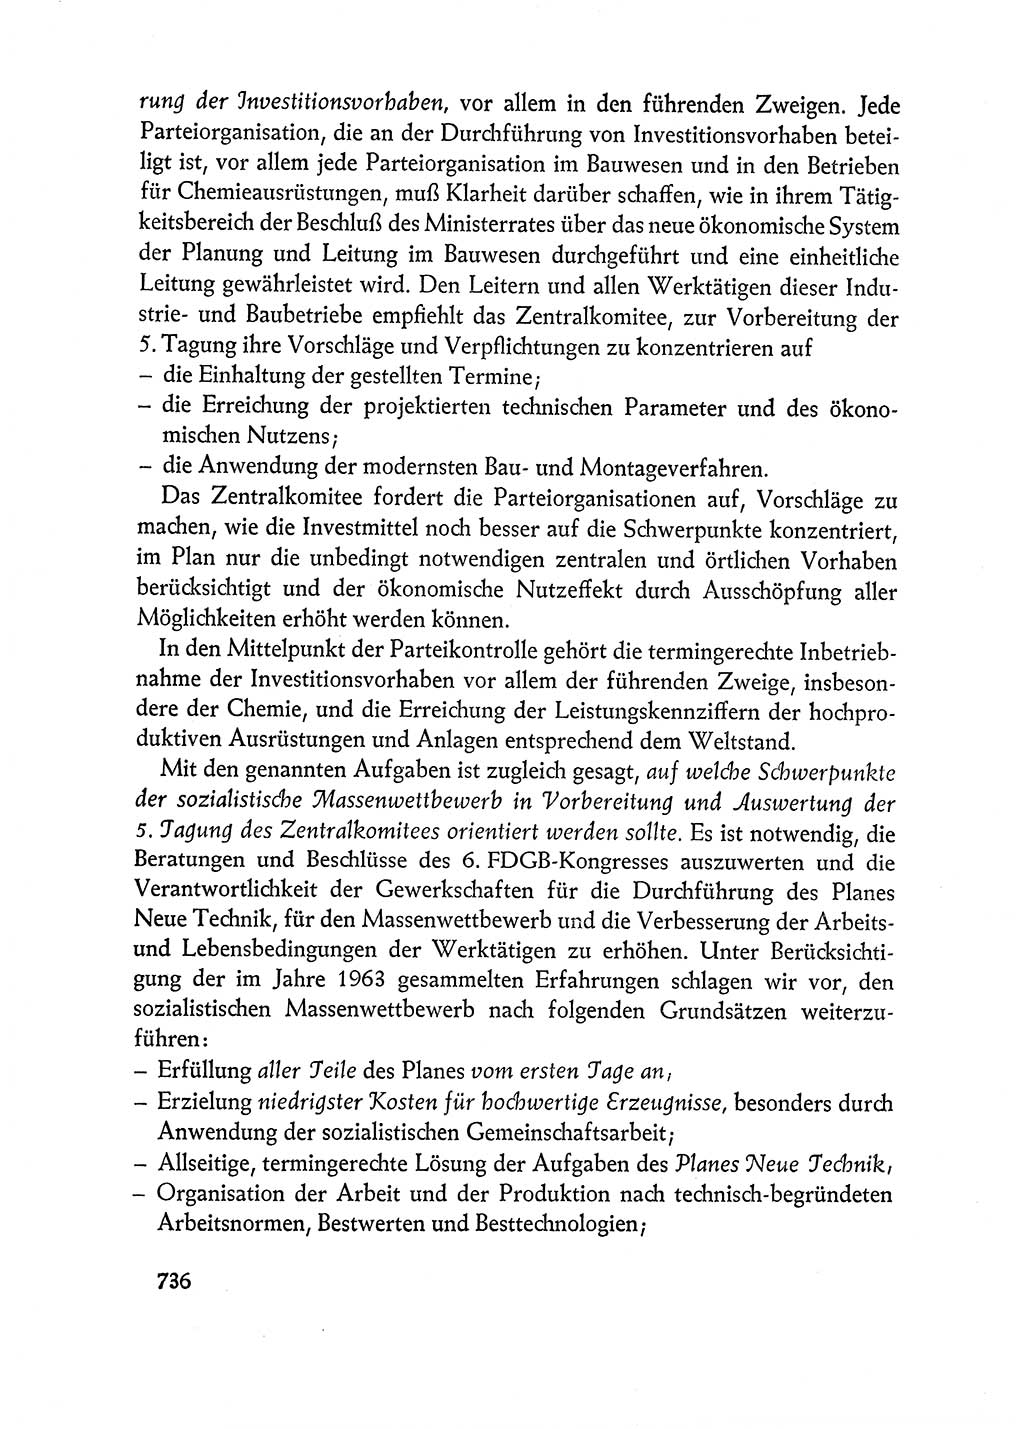 Dokumente der Sozialistischen Einheitspartei Deutschlands (SED) [Deutsche Demokratische Republik (DDR)] 1962-1963, Seite 736 (Dok. SED DDR 1962-1963, S. 736)